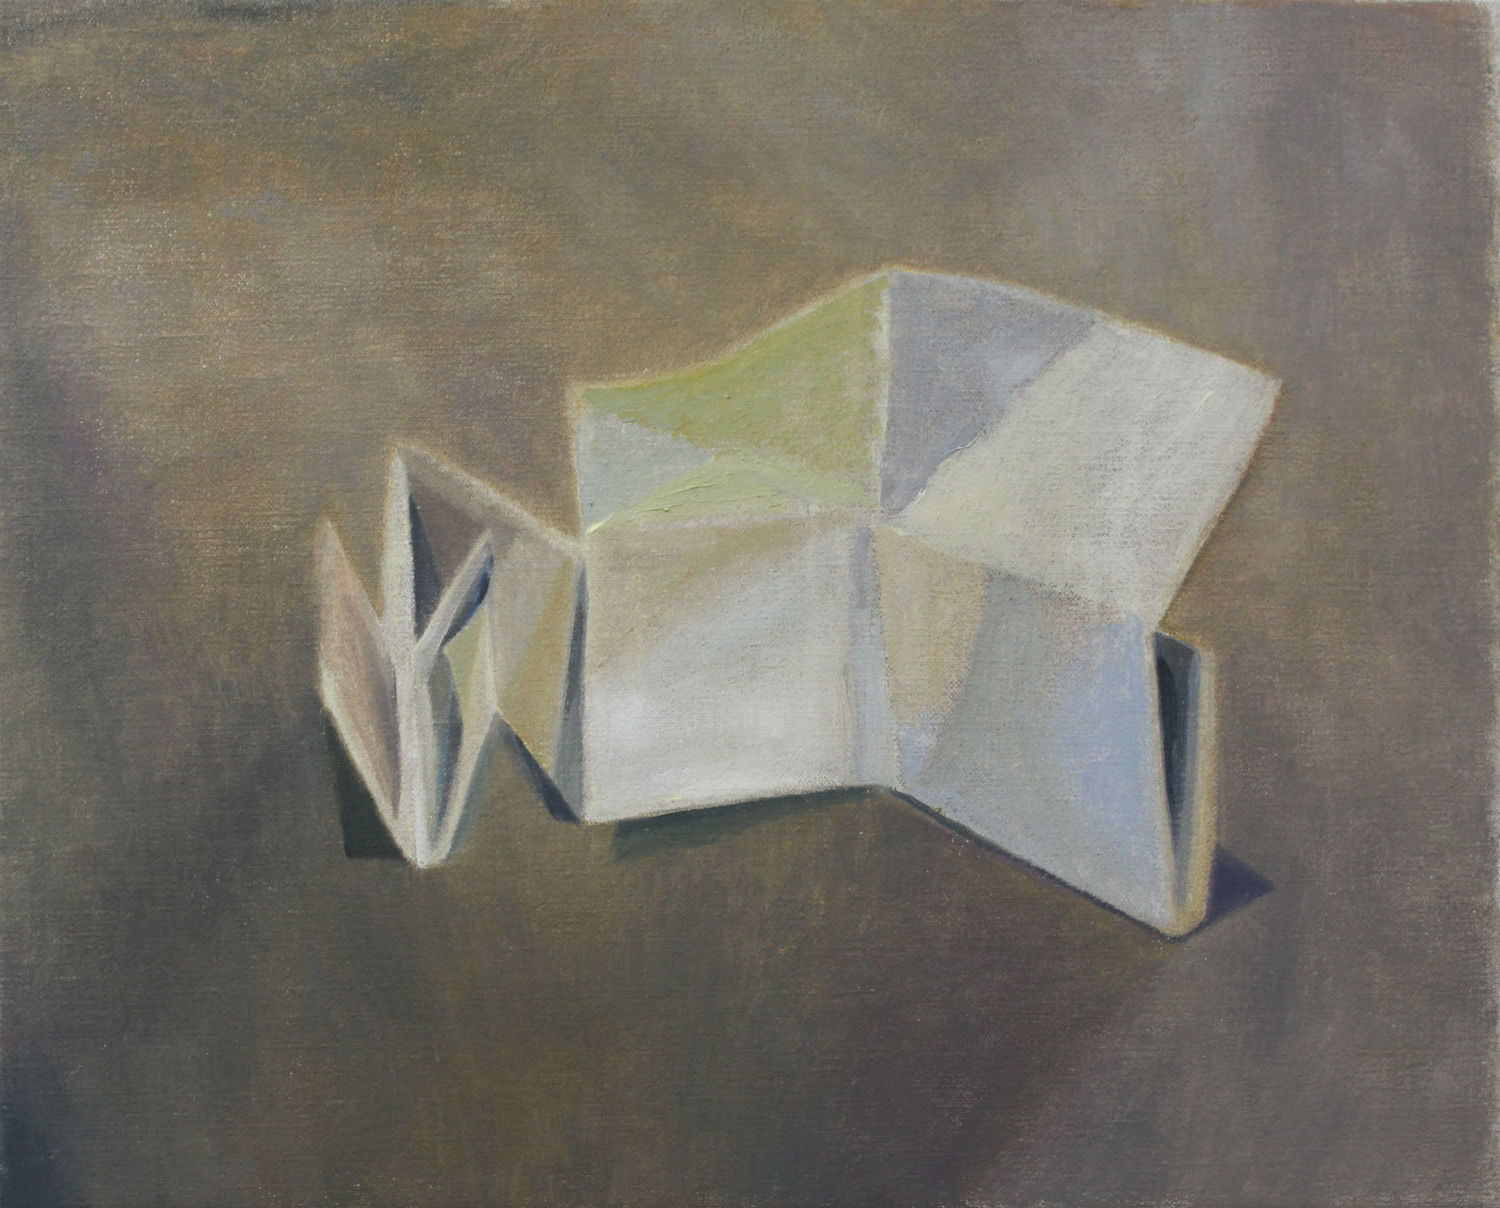   Folded Box    2018, oil on canvas, 33 x 41 cm  